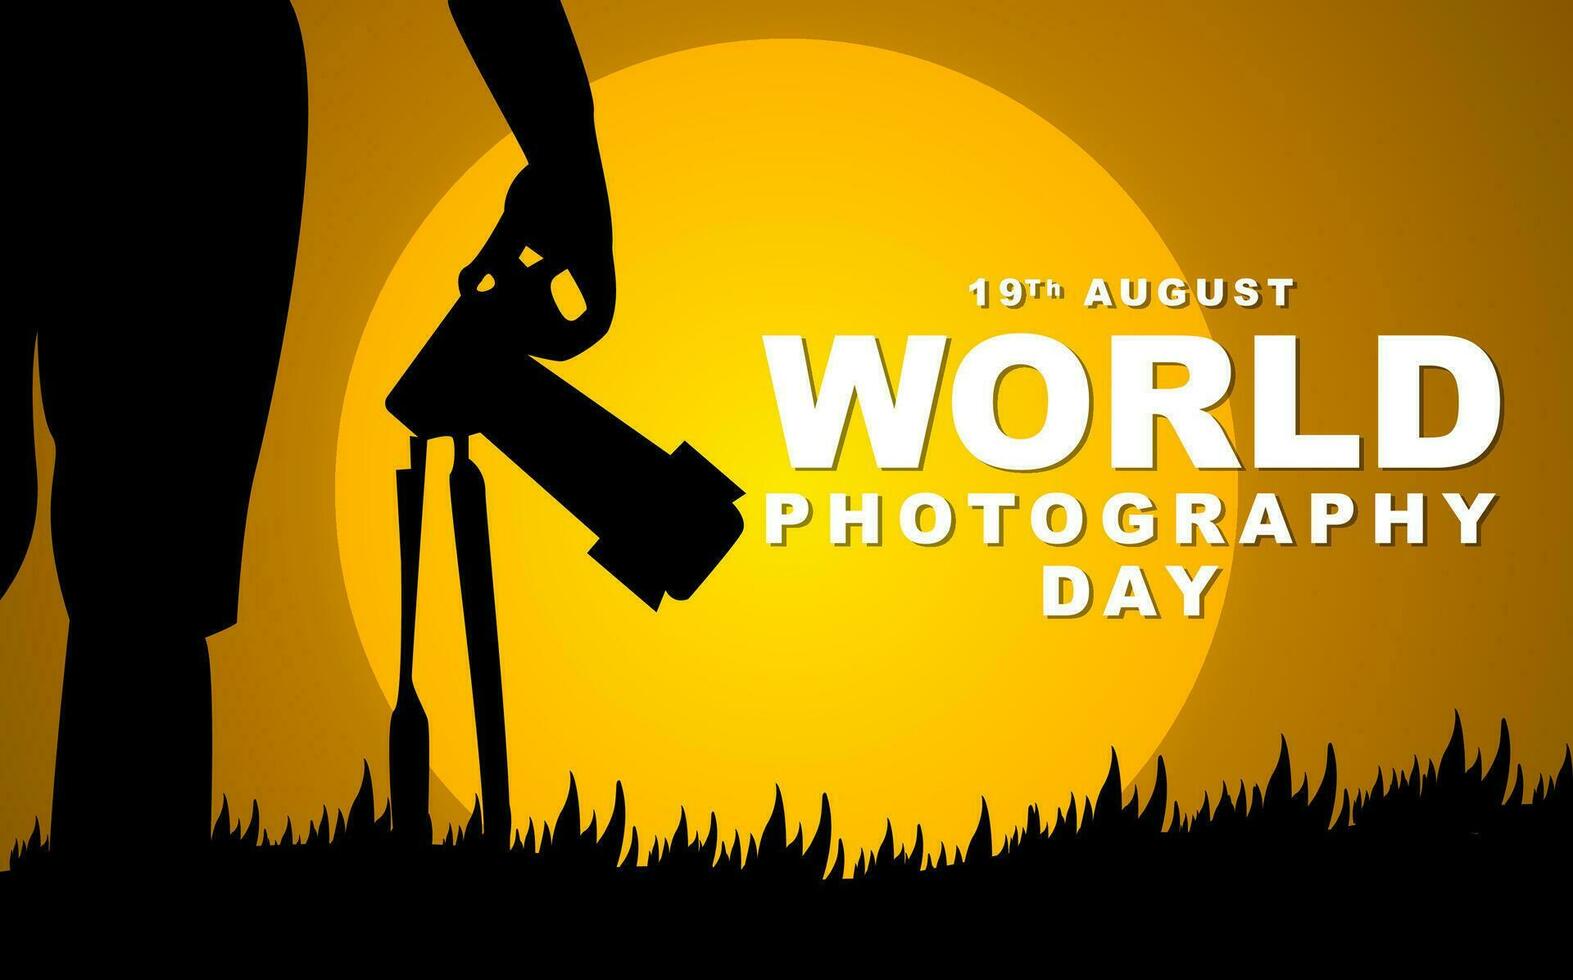 mondo fotografia giorno su agosto 19, fotografo silhouette illustrazione design. vettore